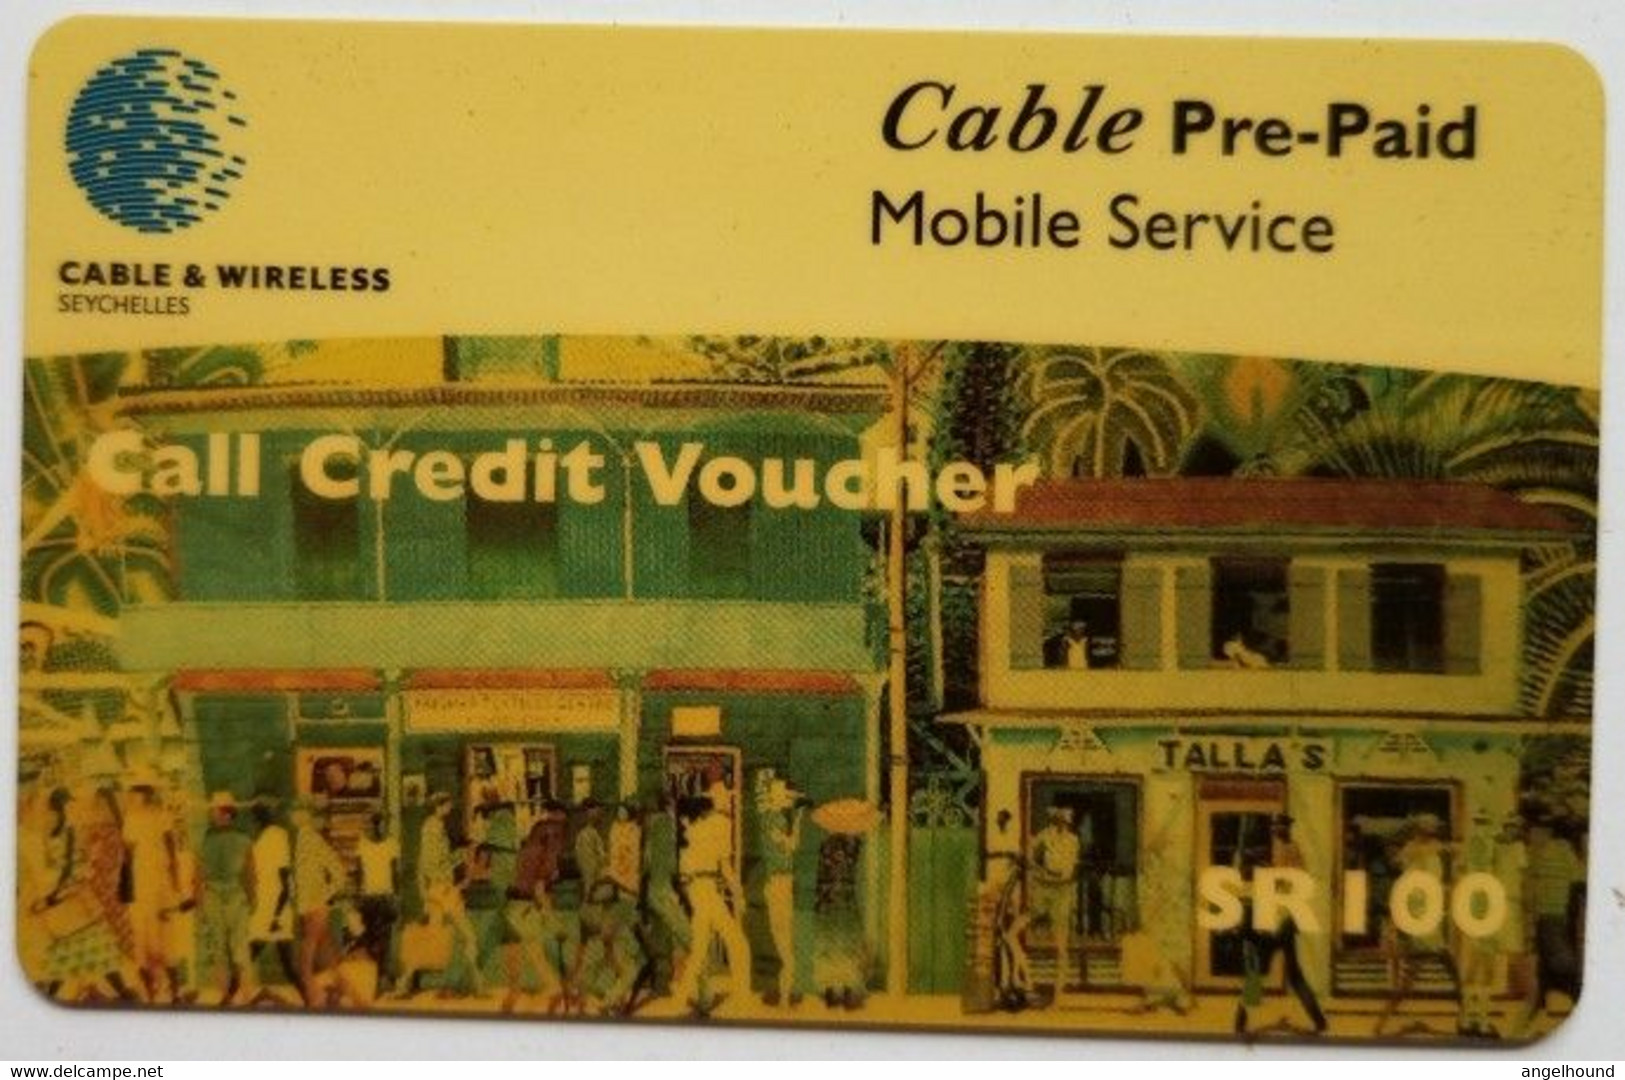 Setchelles  SR 100  Cable Prepaid, Call Credit Voucher - Seychelles